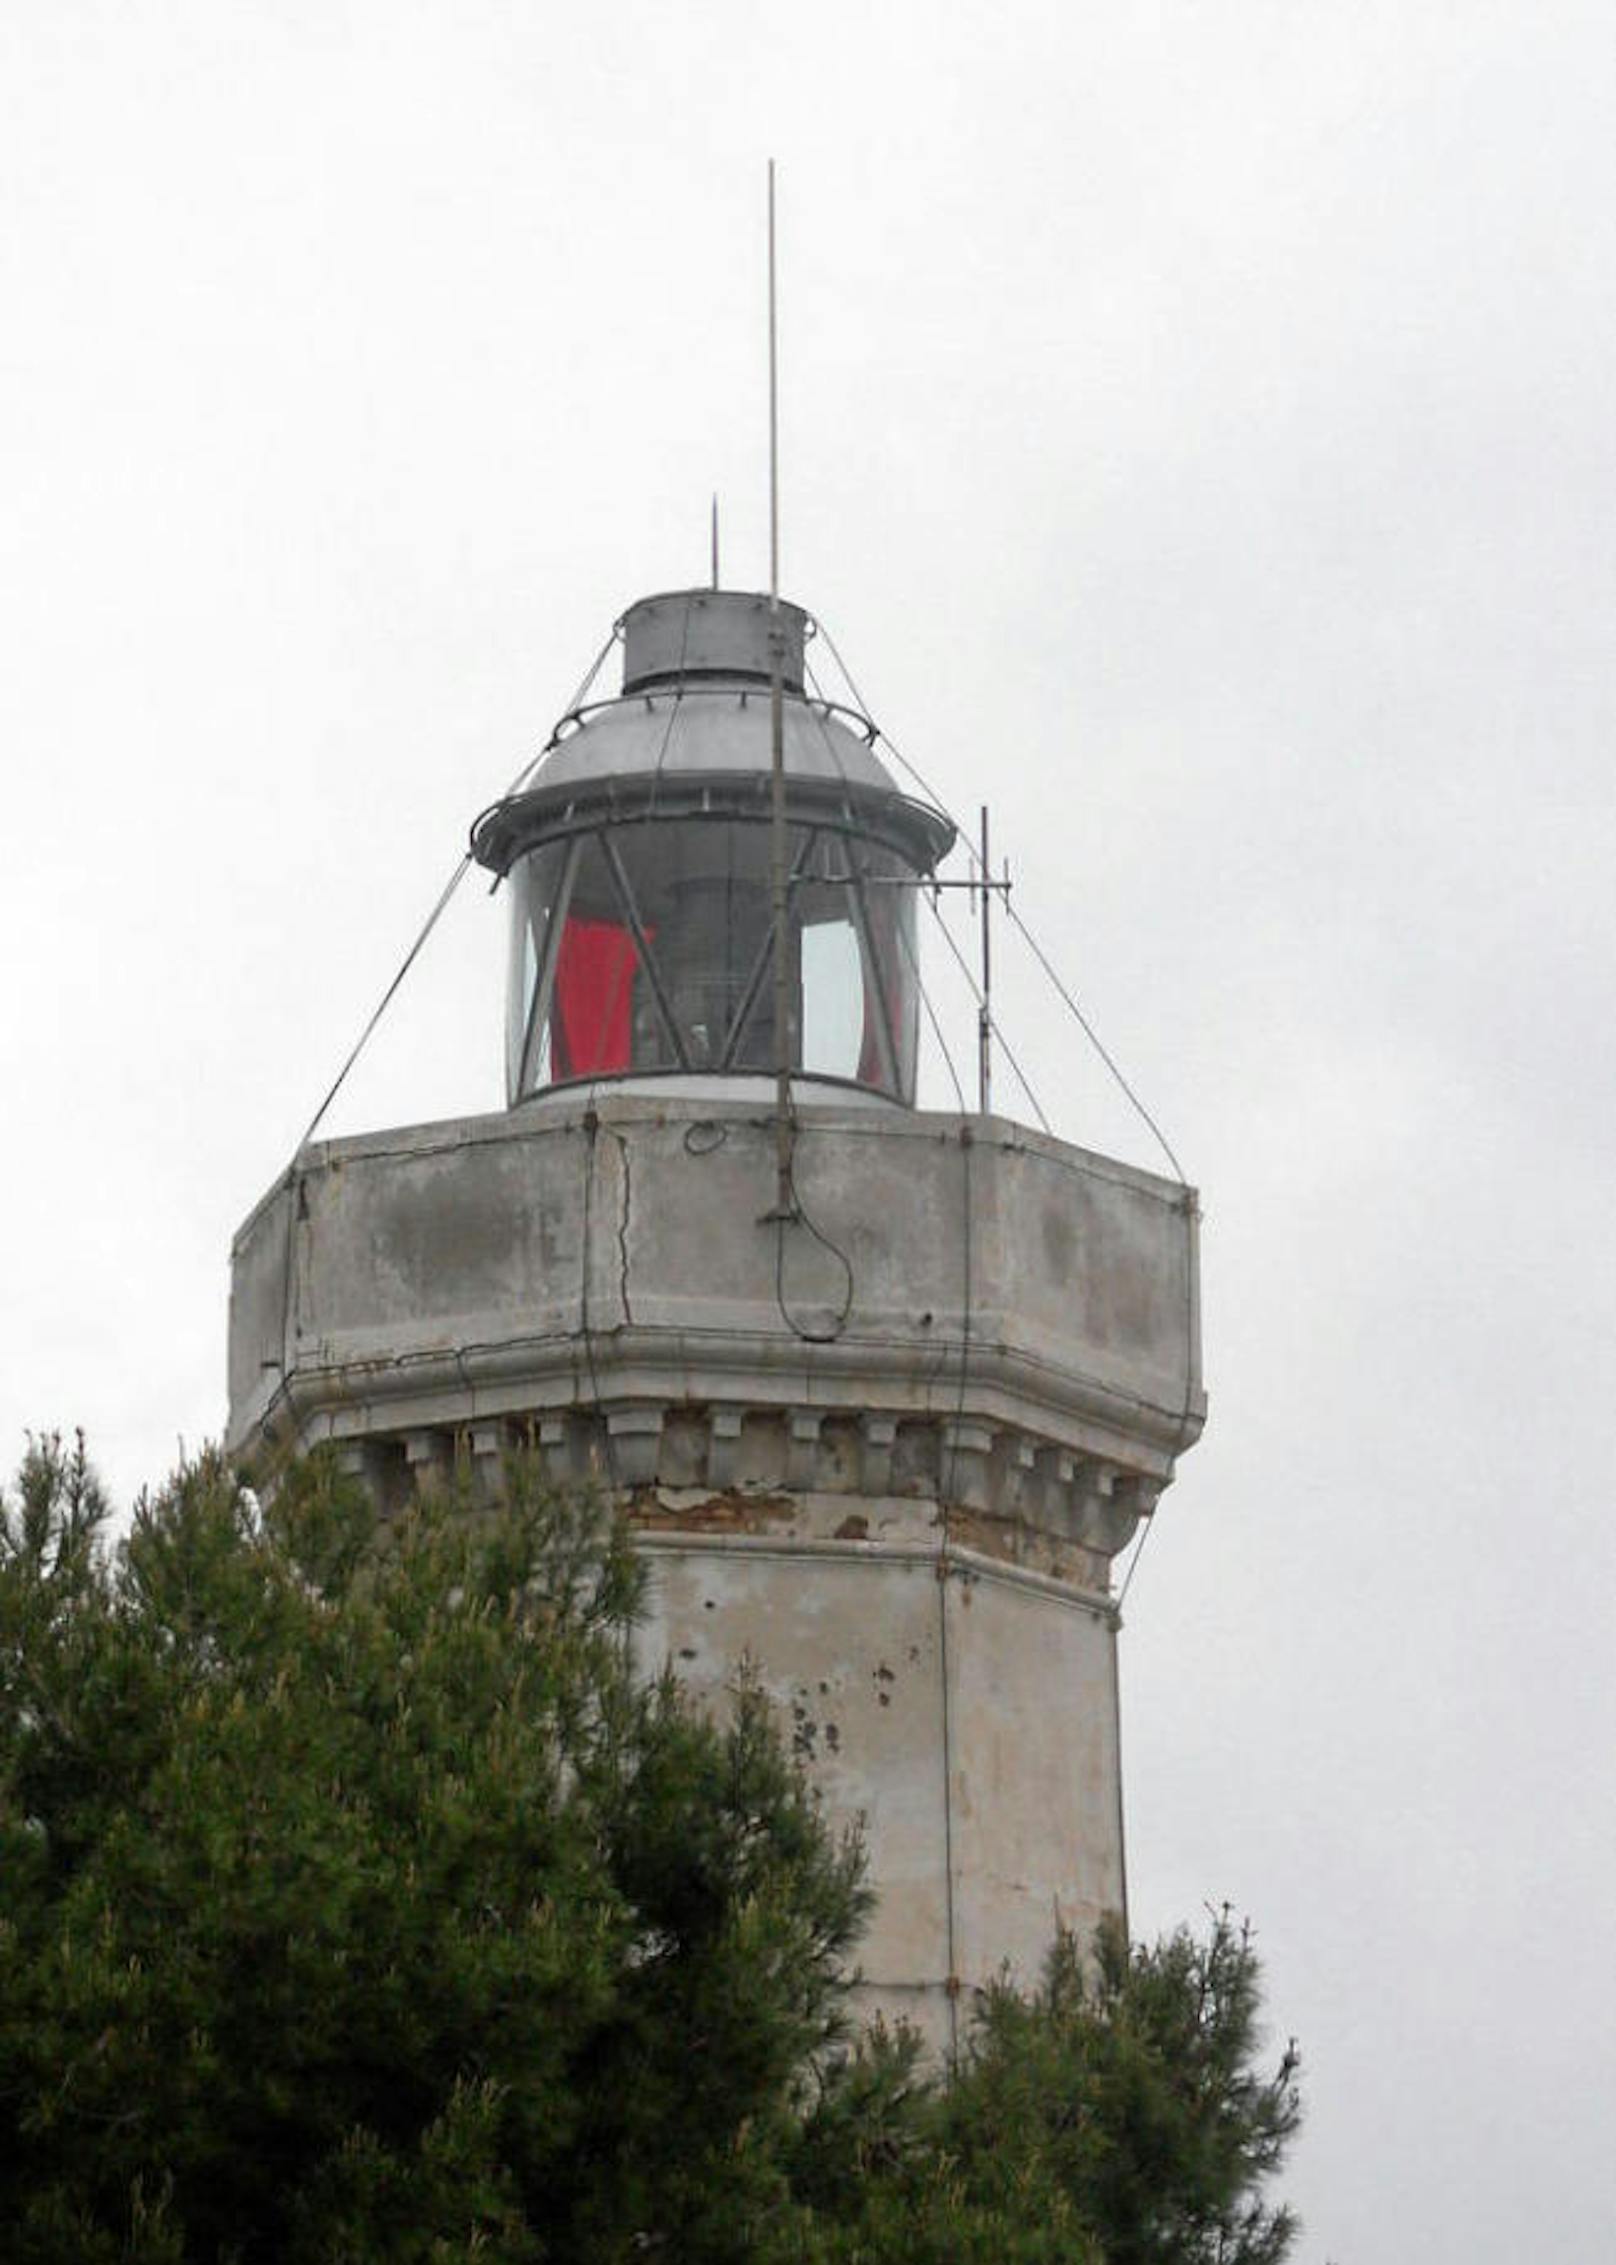 <b>Il Faro di Capo Rizzuto</b>
1870 Quadratmeter und Bewilligungen für fast jede Sorte Gewerbe: Das bringt dieser Leuchtturm in der Region Kalabrien mit. Er steht in der Gemeinde Capo Rizzuto.